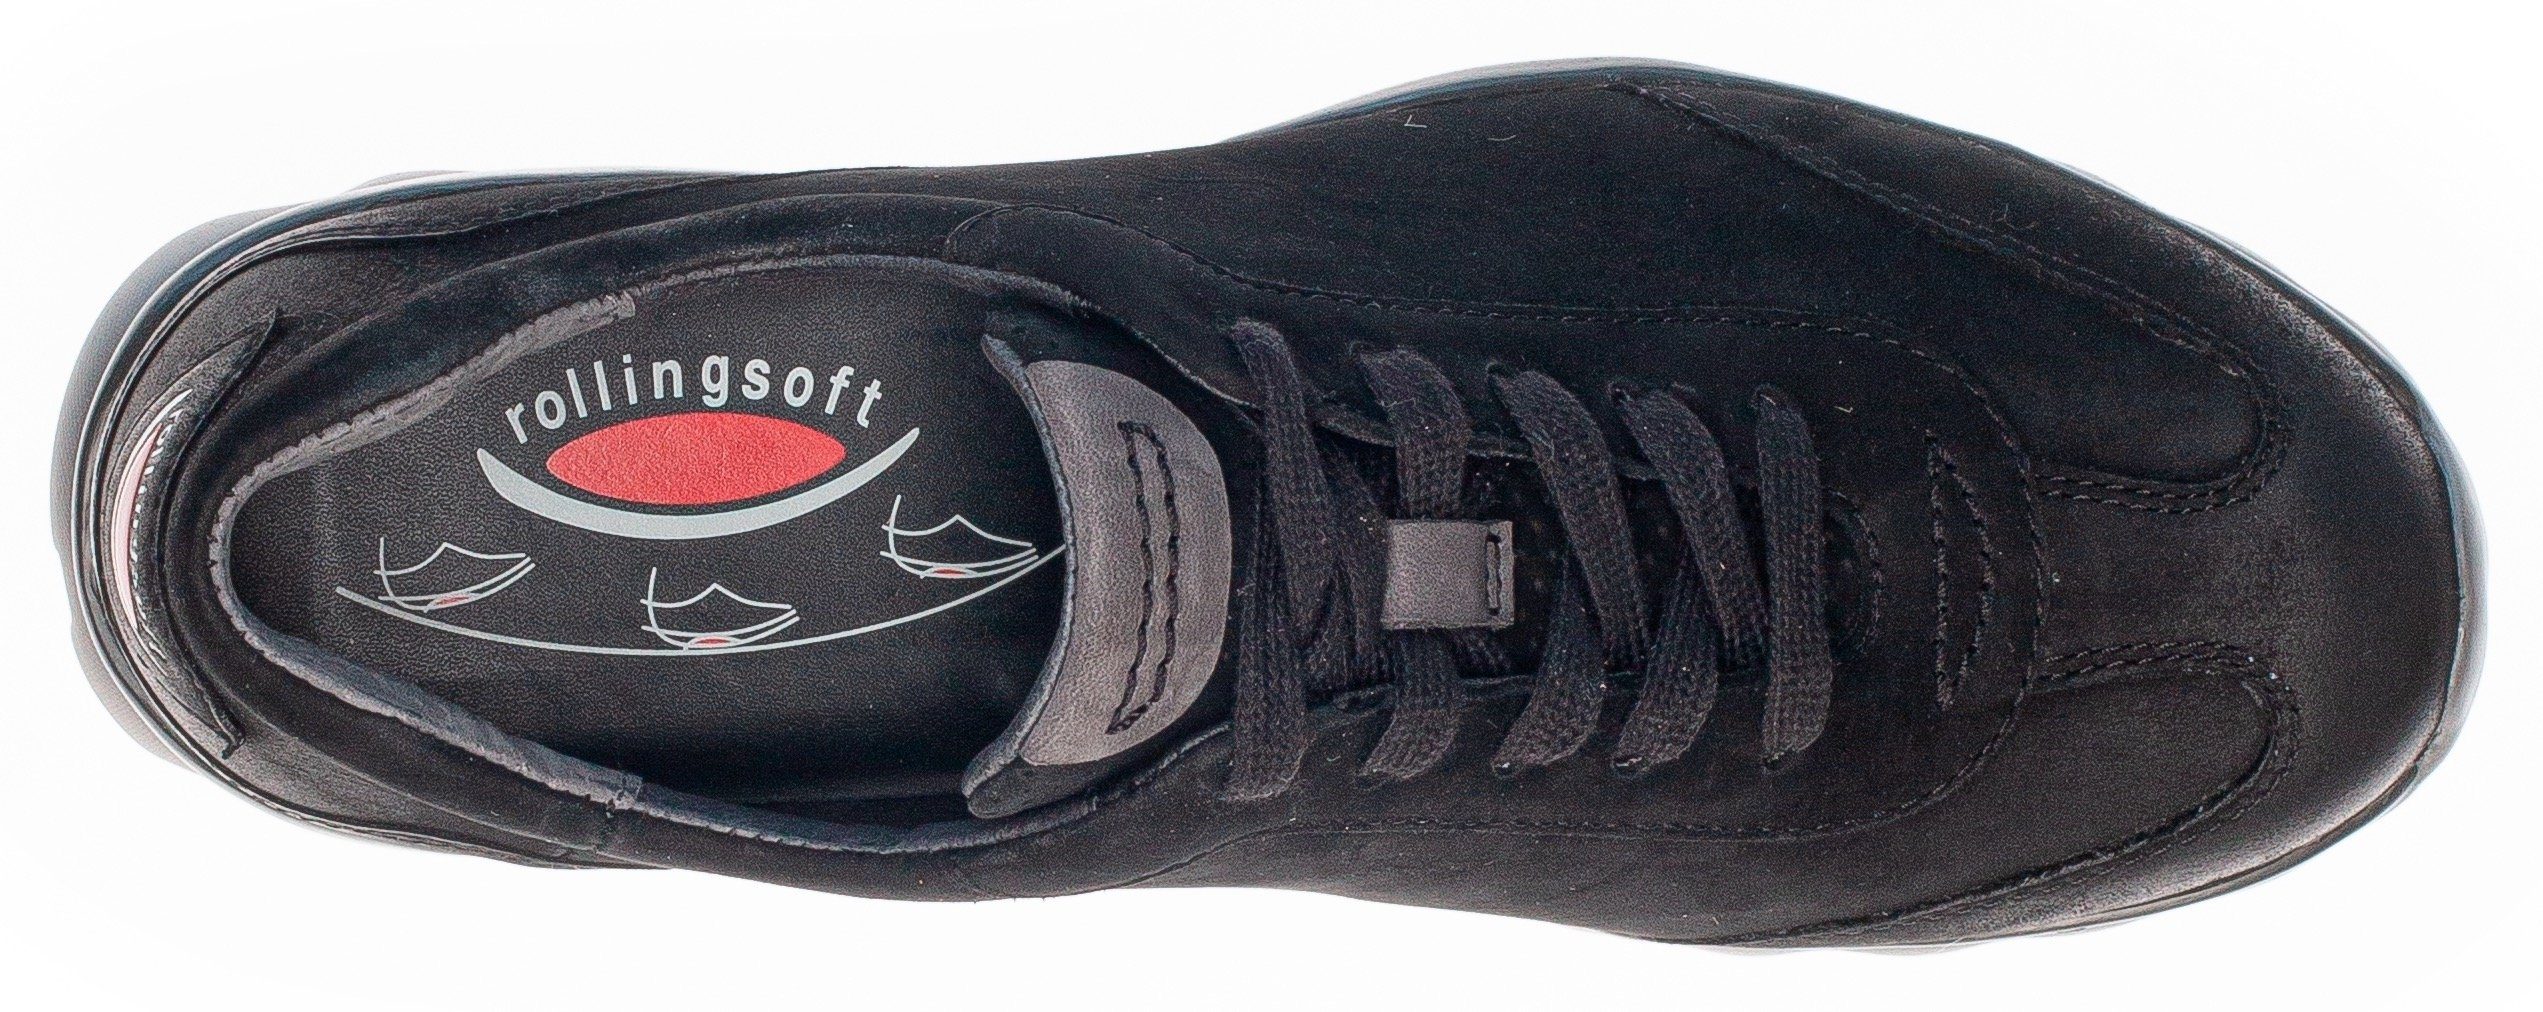 schwarz mit Keilsneaker Ferse Logoschriftzug an Rollingsoft der Gabor